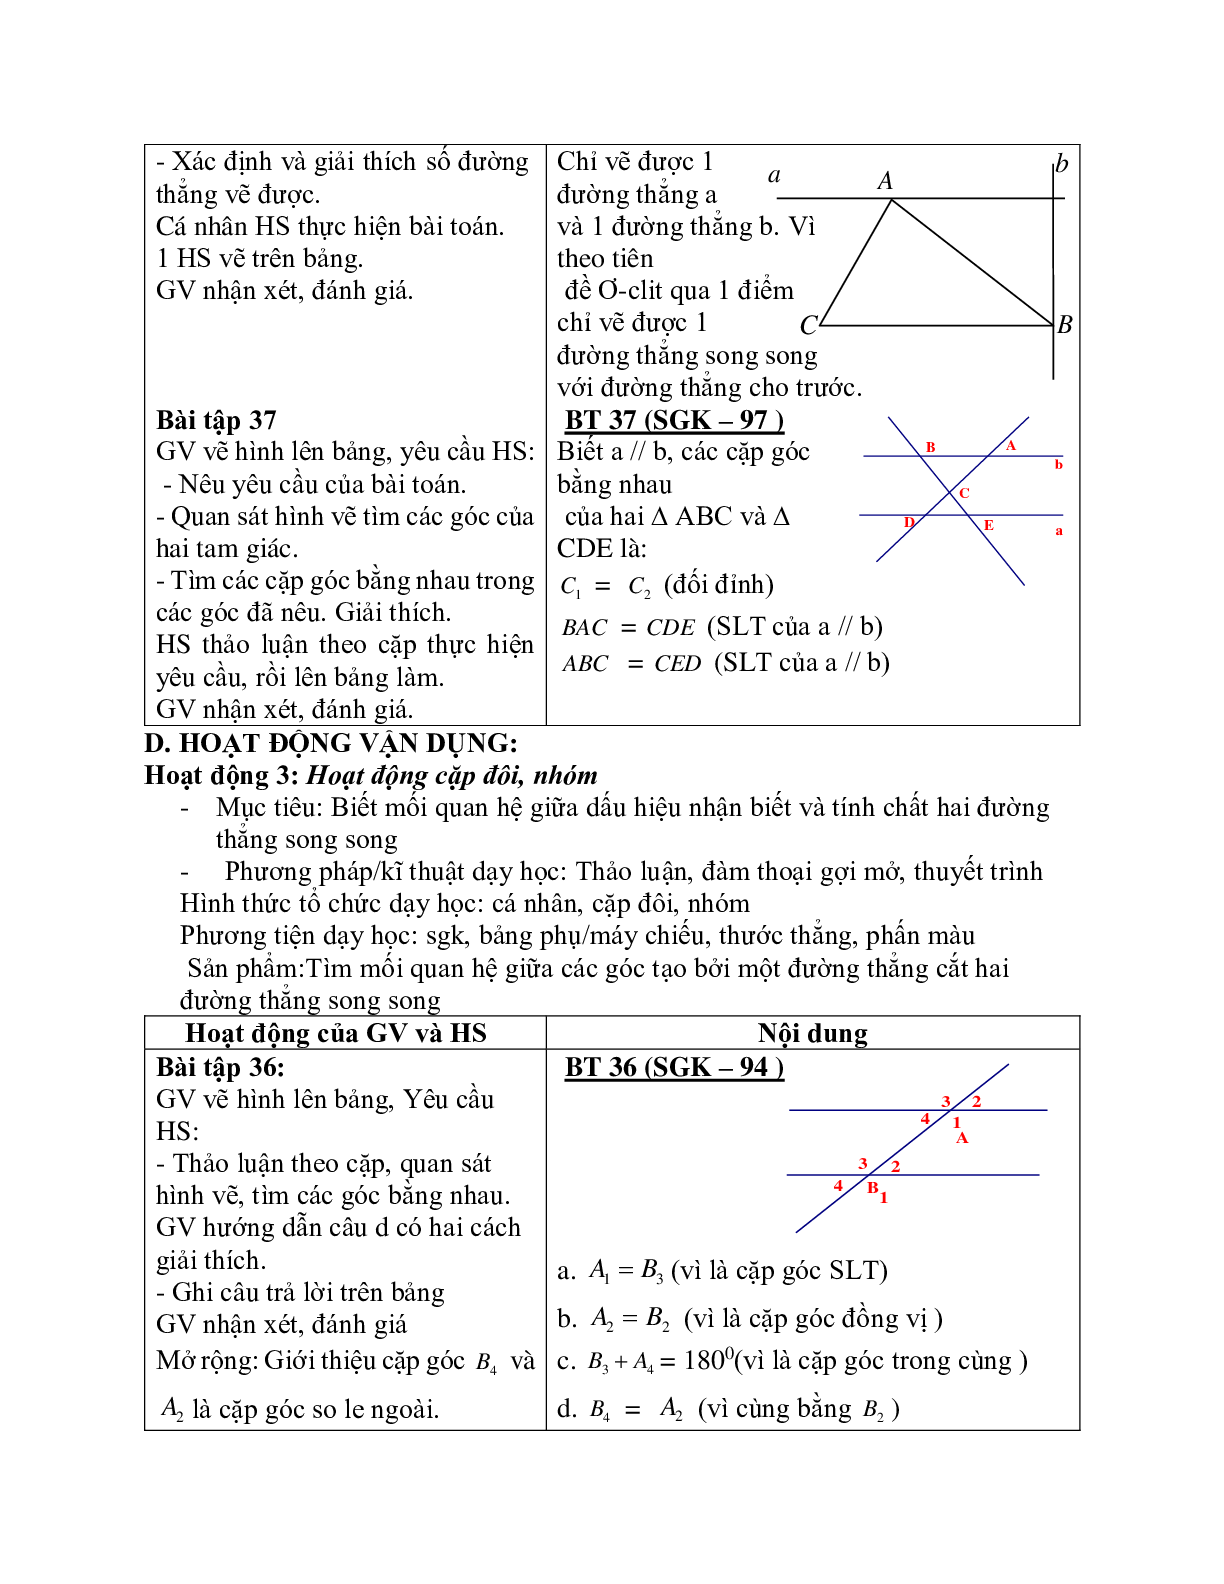 Giáo án Toán học 7 bài 5: Tiên đề Ơ-clit về đường thẳng song song chuẩn nhất (trang 6)